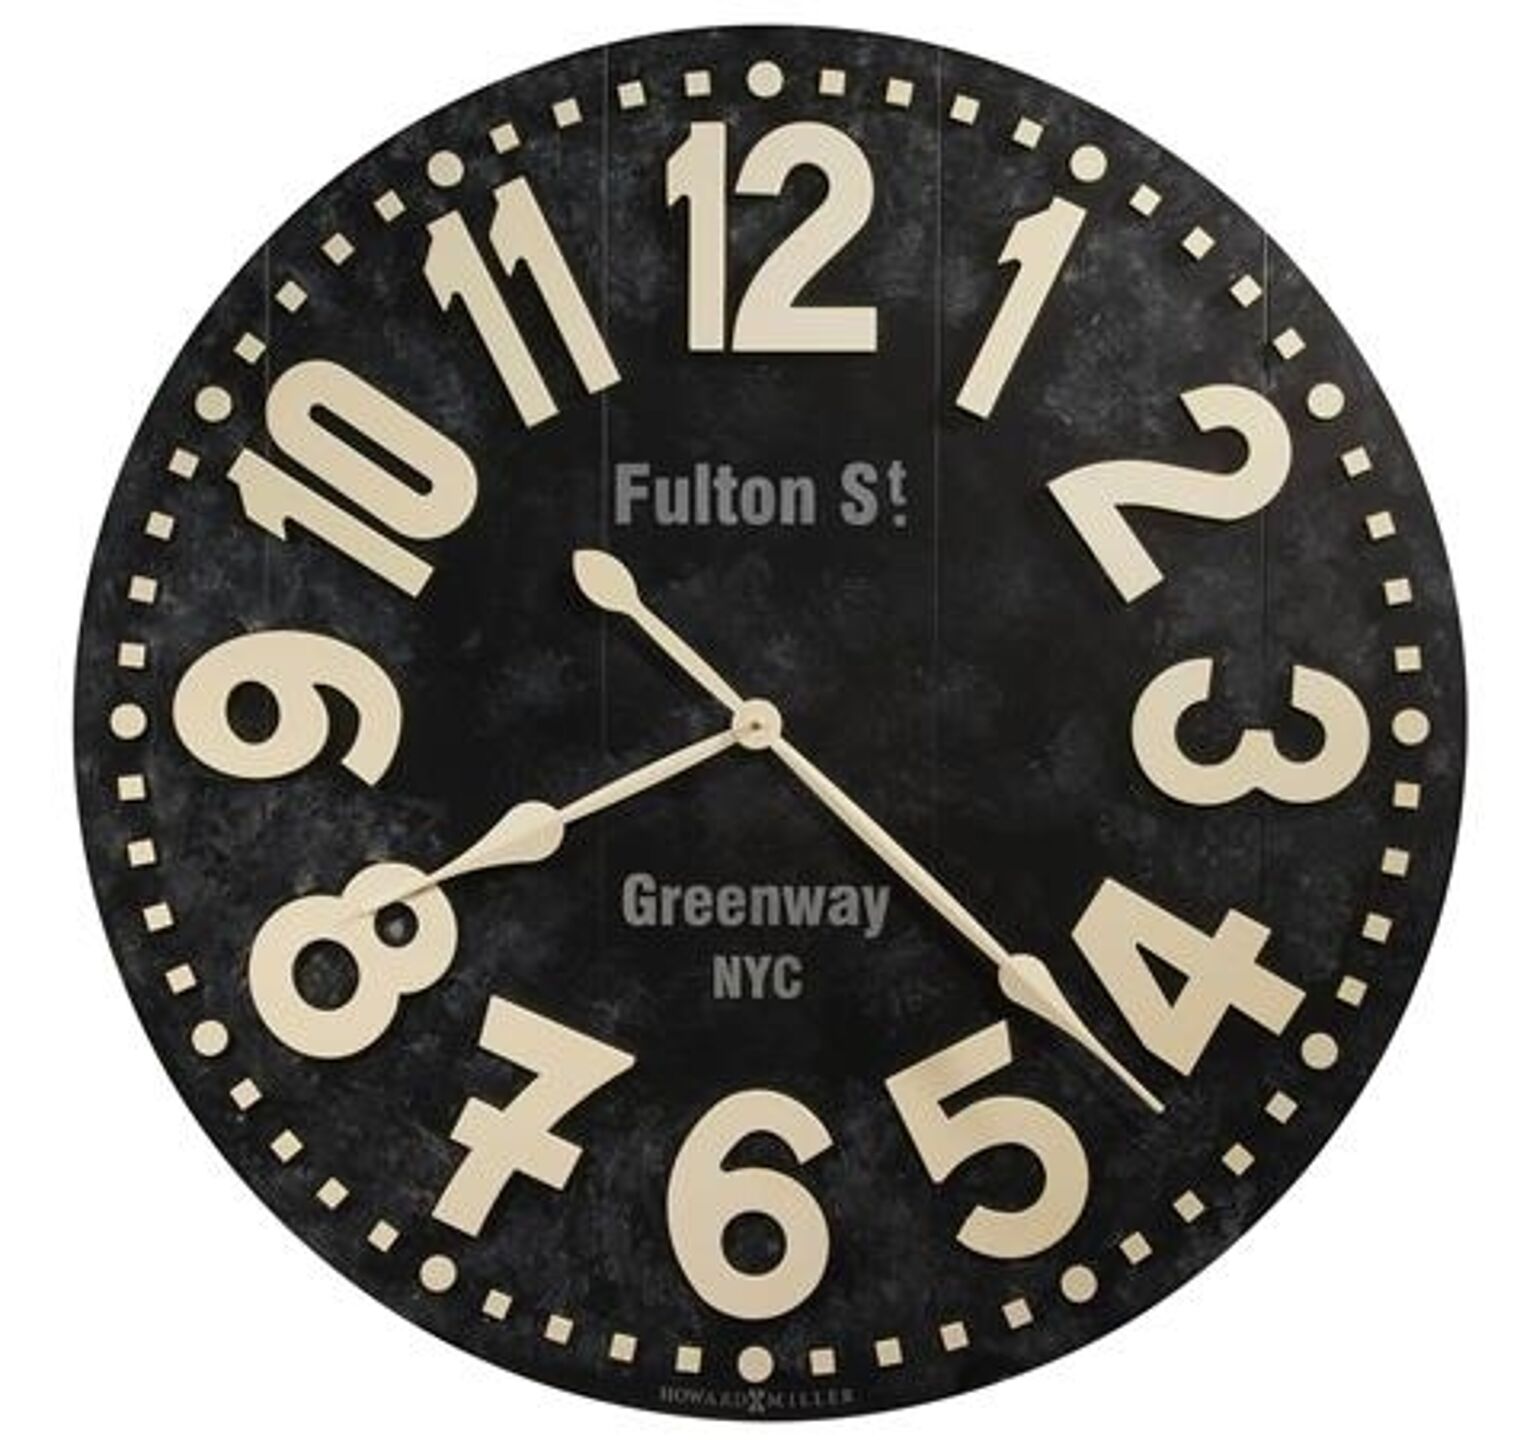 【正規輸入品】 アメリカ ハワードミラー 625-557 HOWARD MILLER FULTON STREET クオーツ（電池式） 掛け時計